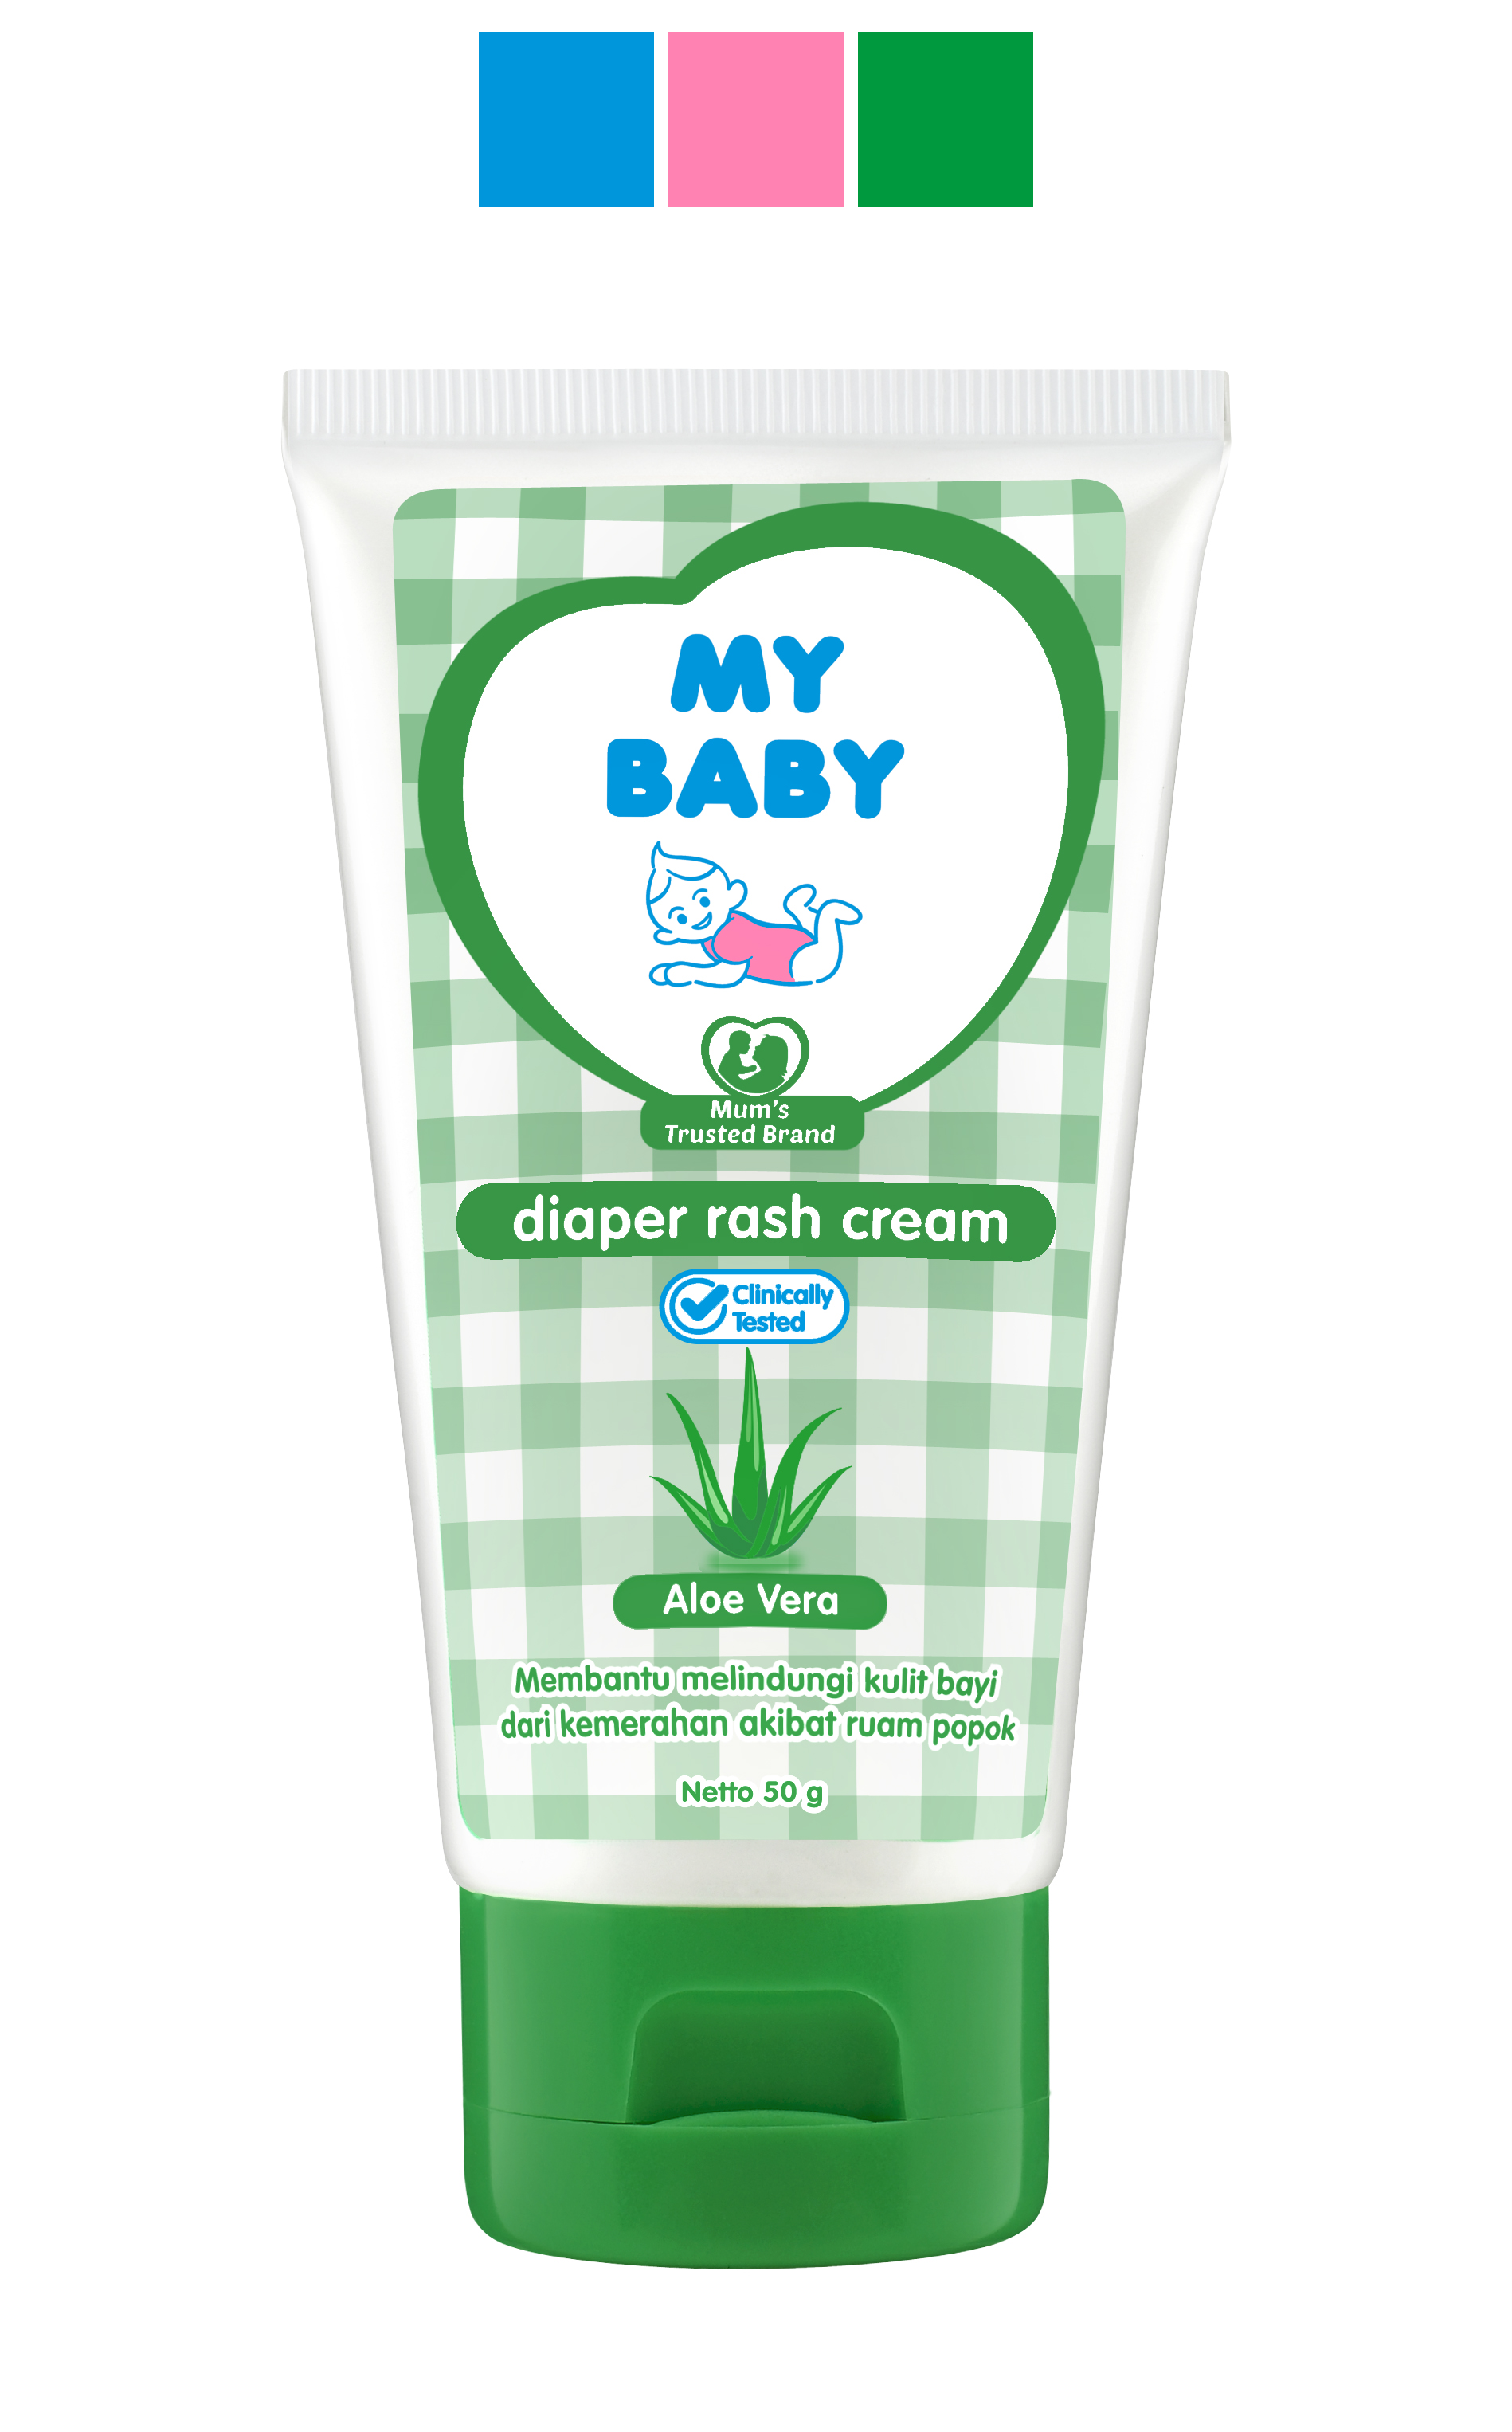 Diapers Rash Cream My Baby